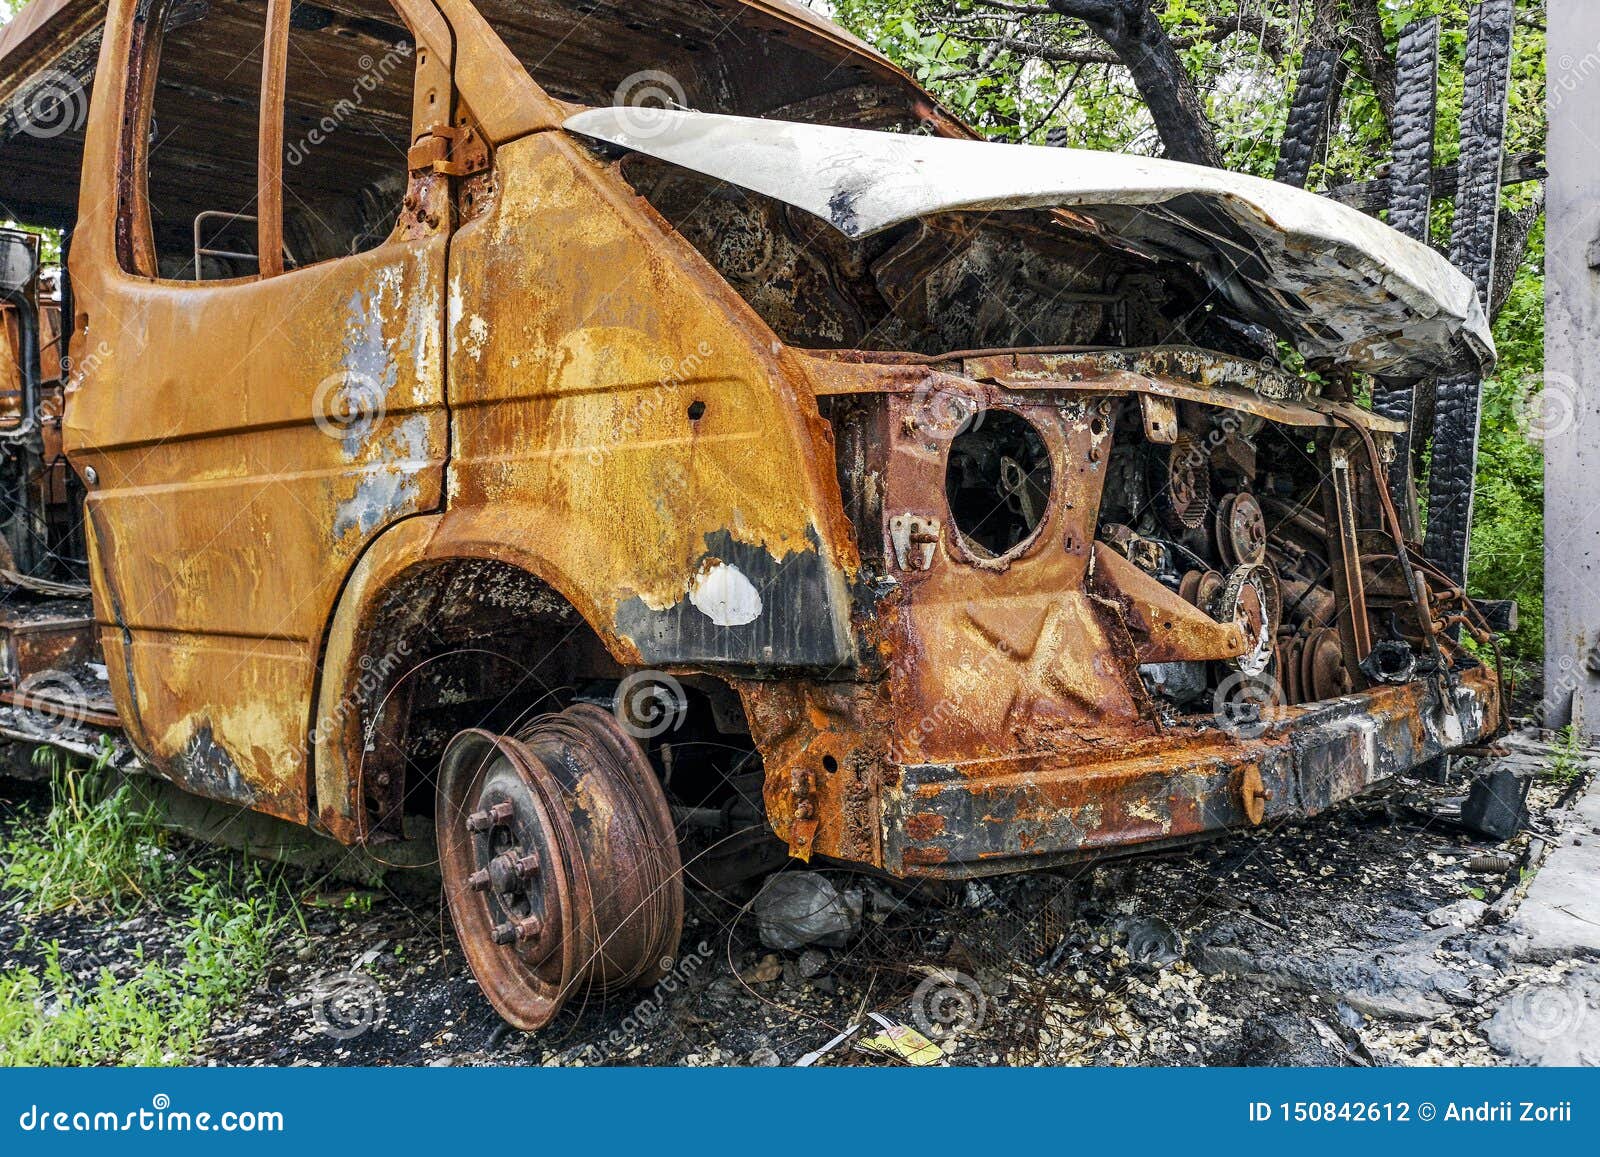 Автомобиль после пожара. Огонь на ржавой машине. Восстановление машины после пожара. Старые машины после пожара.